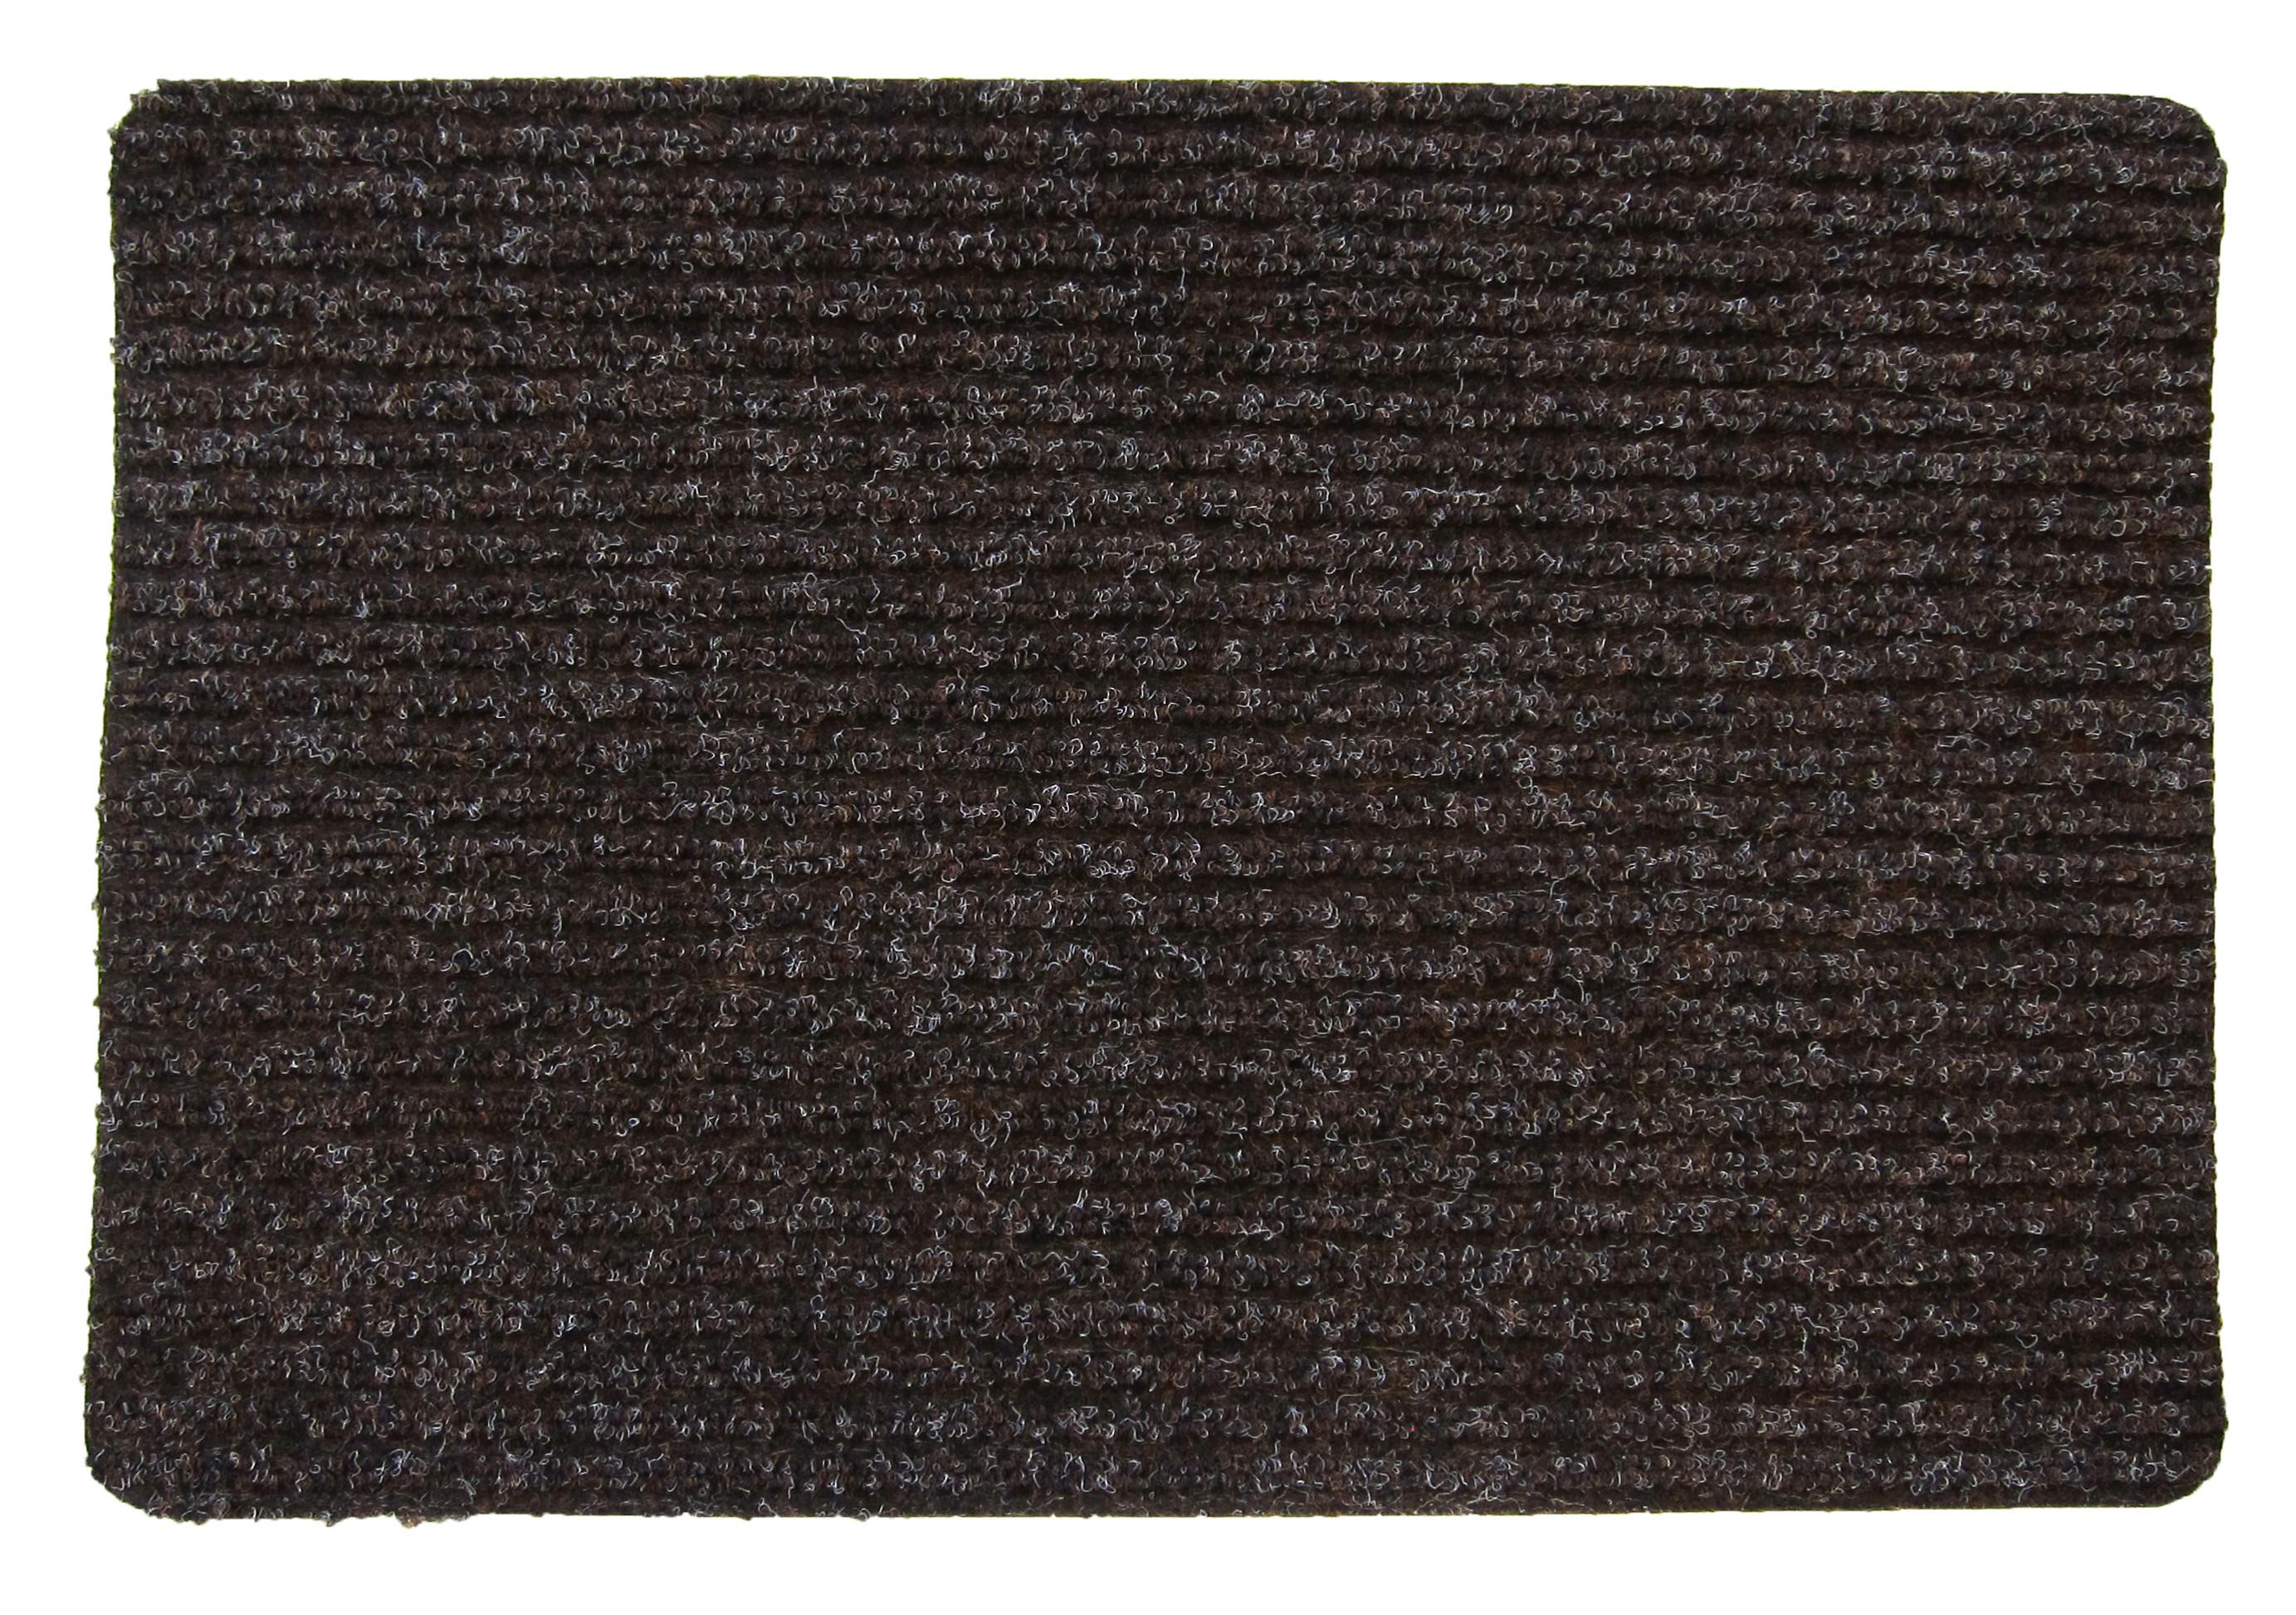 Fußmatte Mona in Braun ca. 25x60cm - Braun, KONVENTIONELL, Kunststoff (25/60cm) - Modern Living